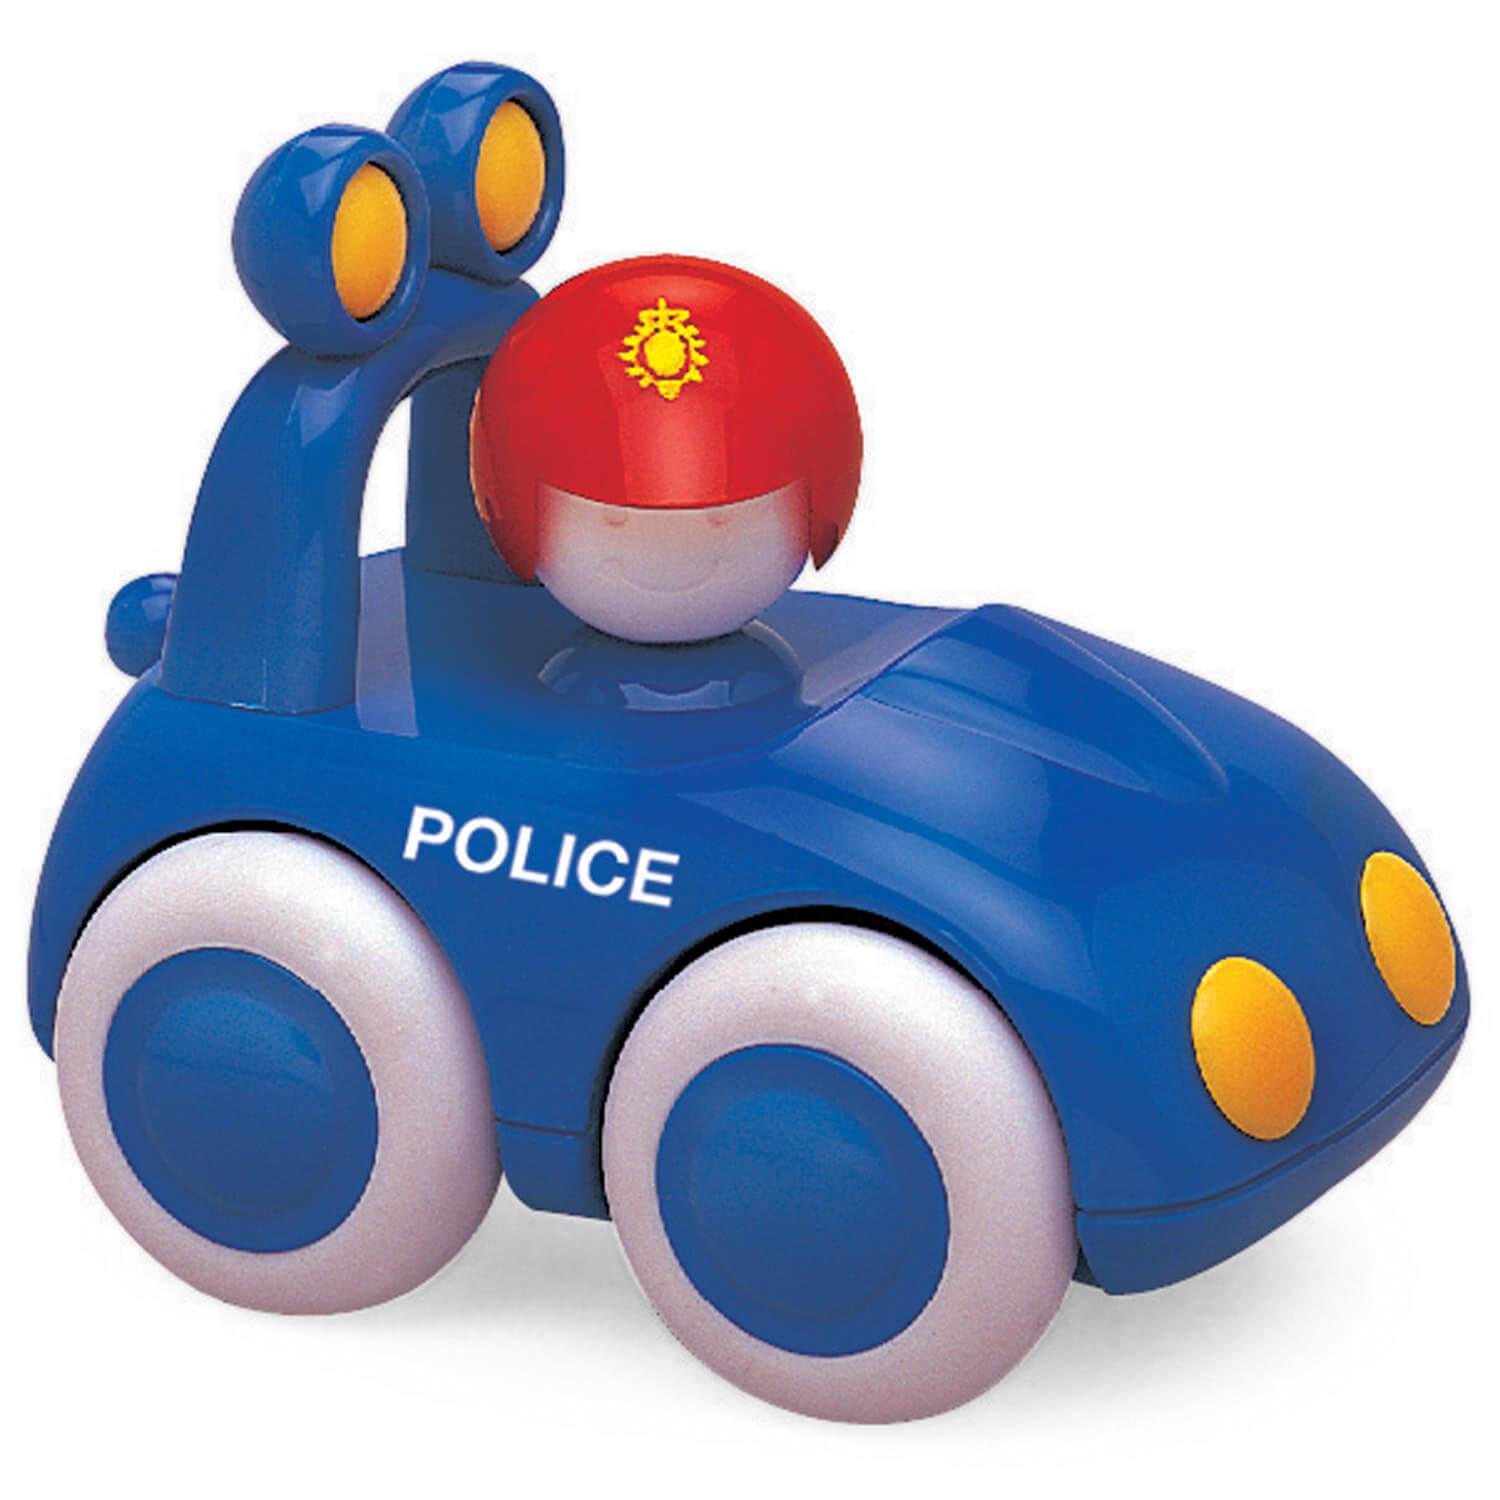 Baby véhicule : Voiture de police - Jeux et jouets Tolo - Avenue des Jeux